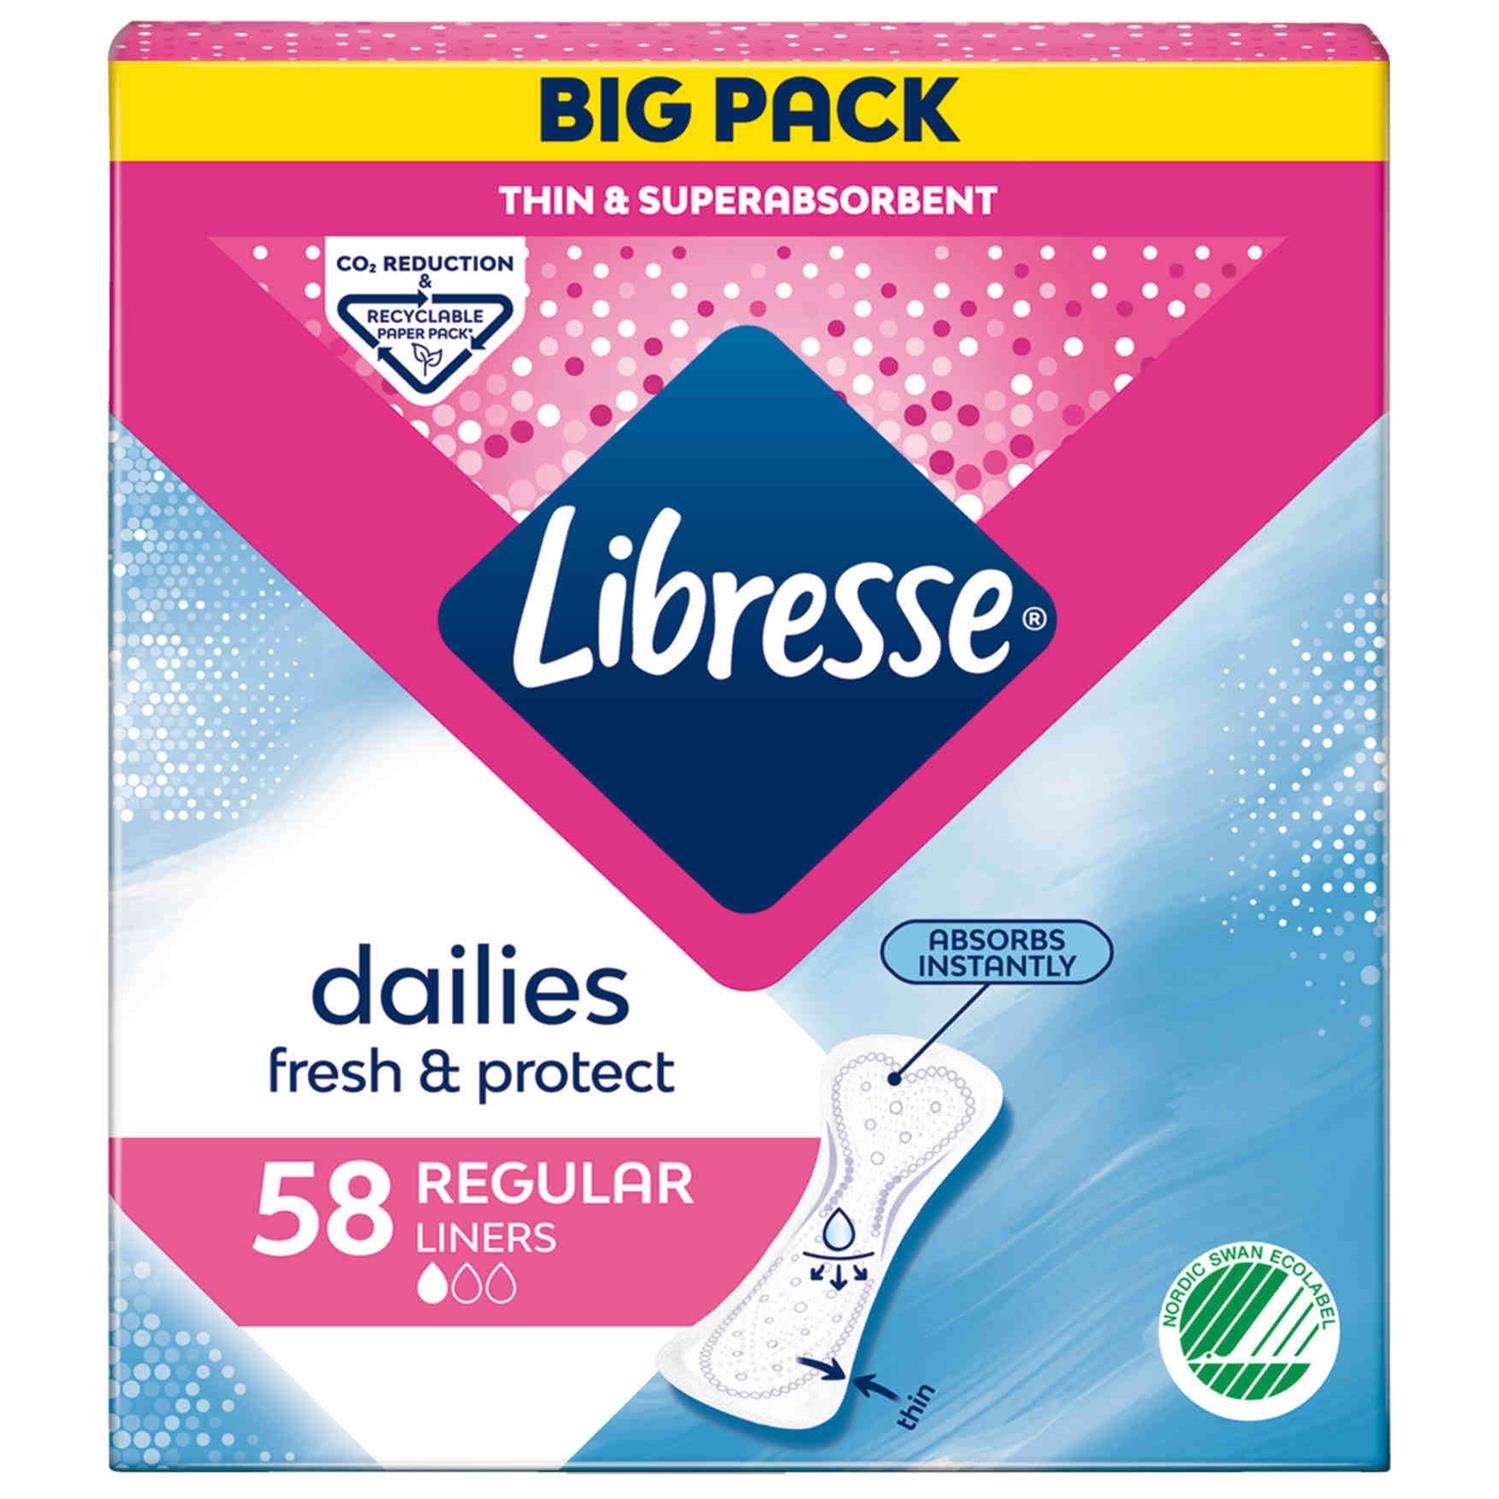 fedt nok Specialitet Derive Libresse Trusseindlæg Regular Liners Big Pack 58 stk. - Grænsehandel til  billige priser